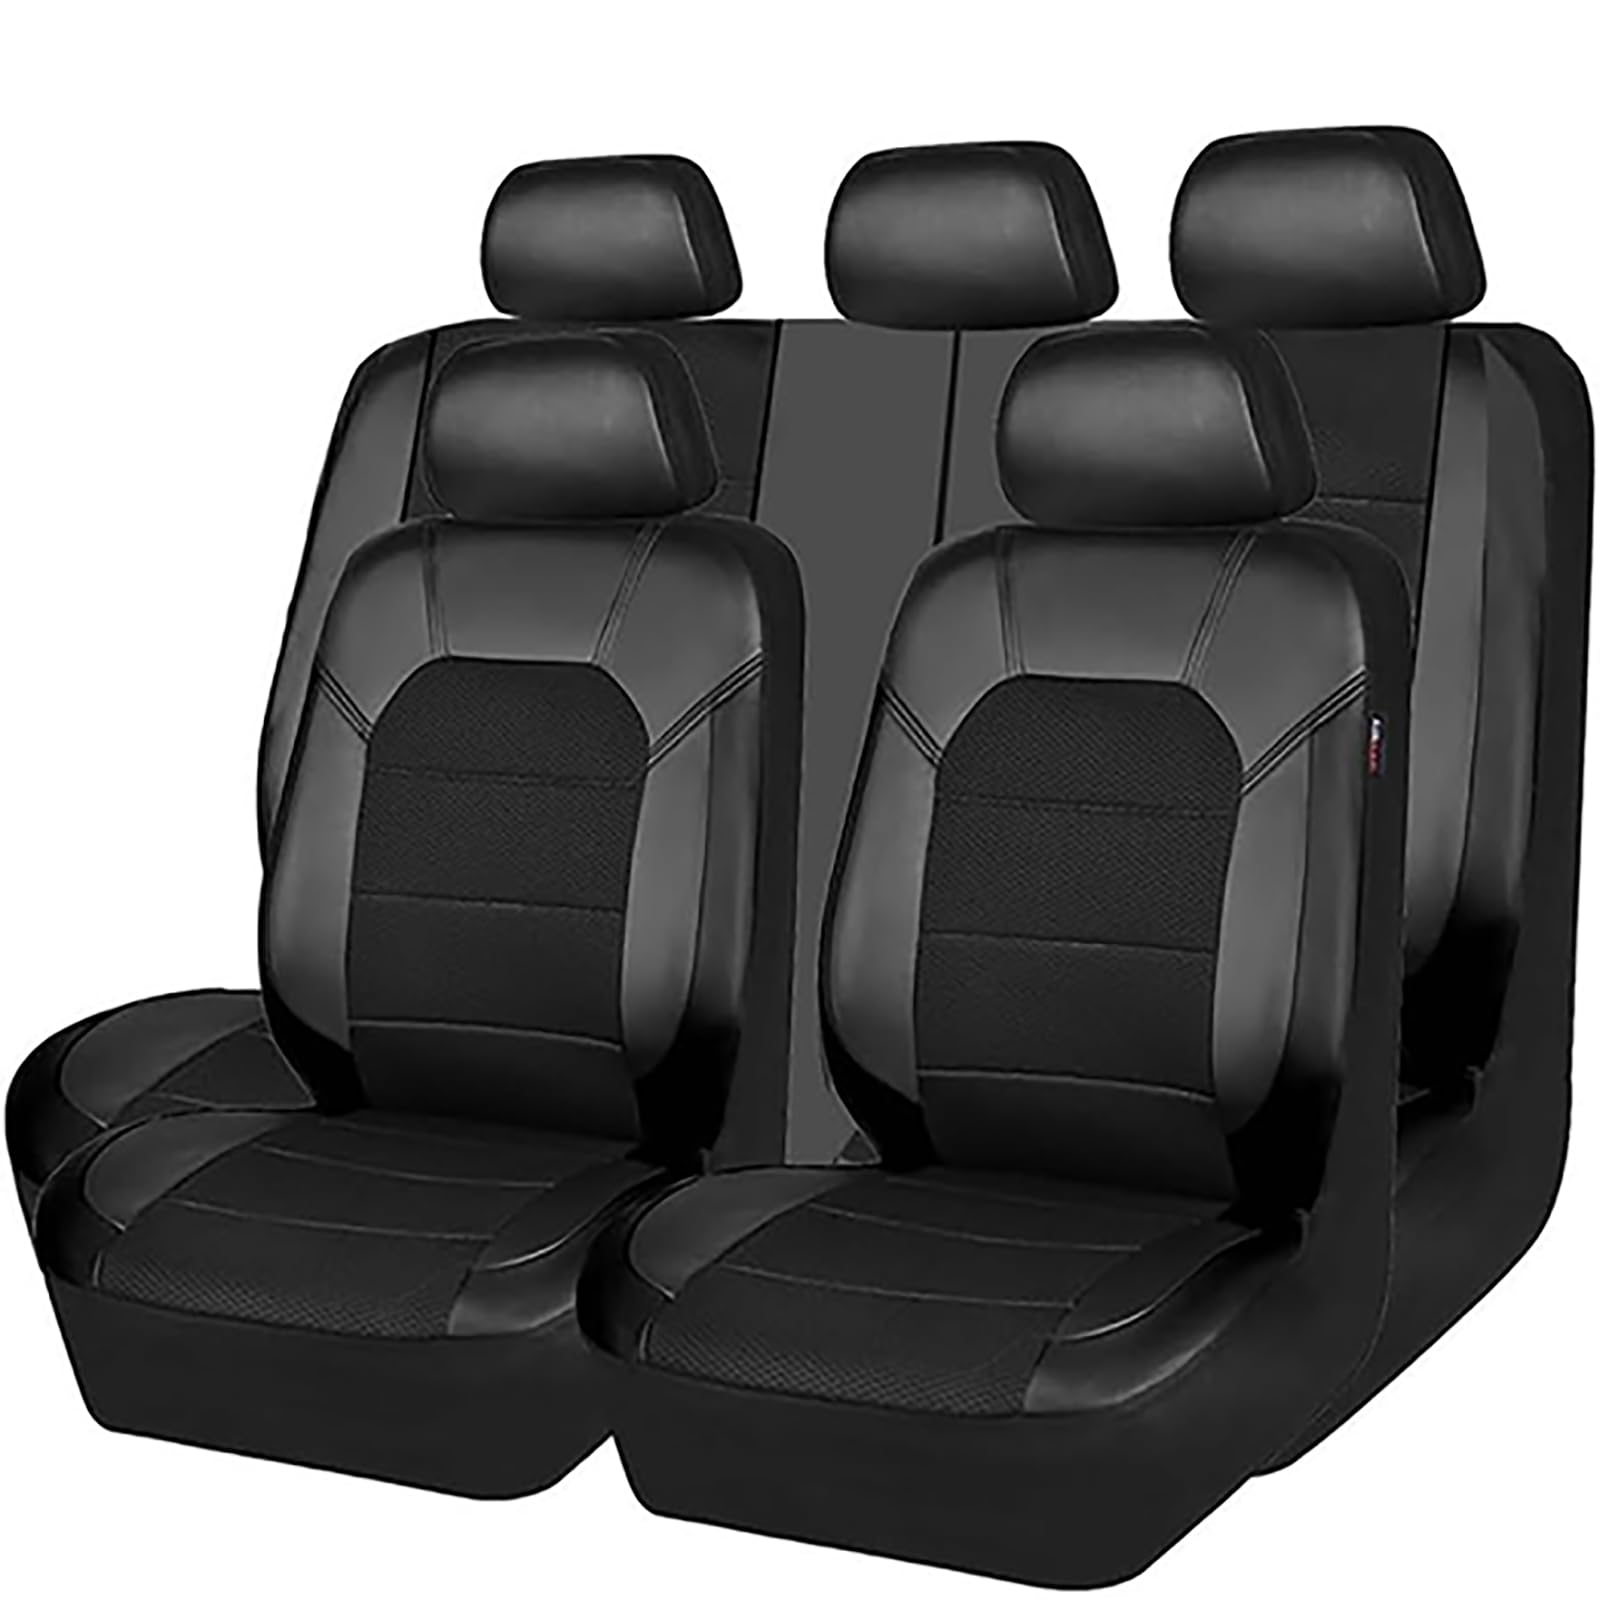 EYHQKRTR Auto Leder Sitzkissen Für VW Golf-VII 2014-2020, 5 Sitzer Full Set SitzbezüGe Schonbezug Vorne Rückbank Sitzschutz Compatible Airbag Innenraum Zubehör,A/Black von EYHQKRTR